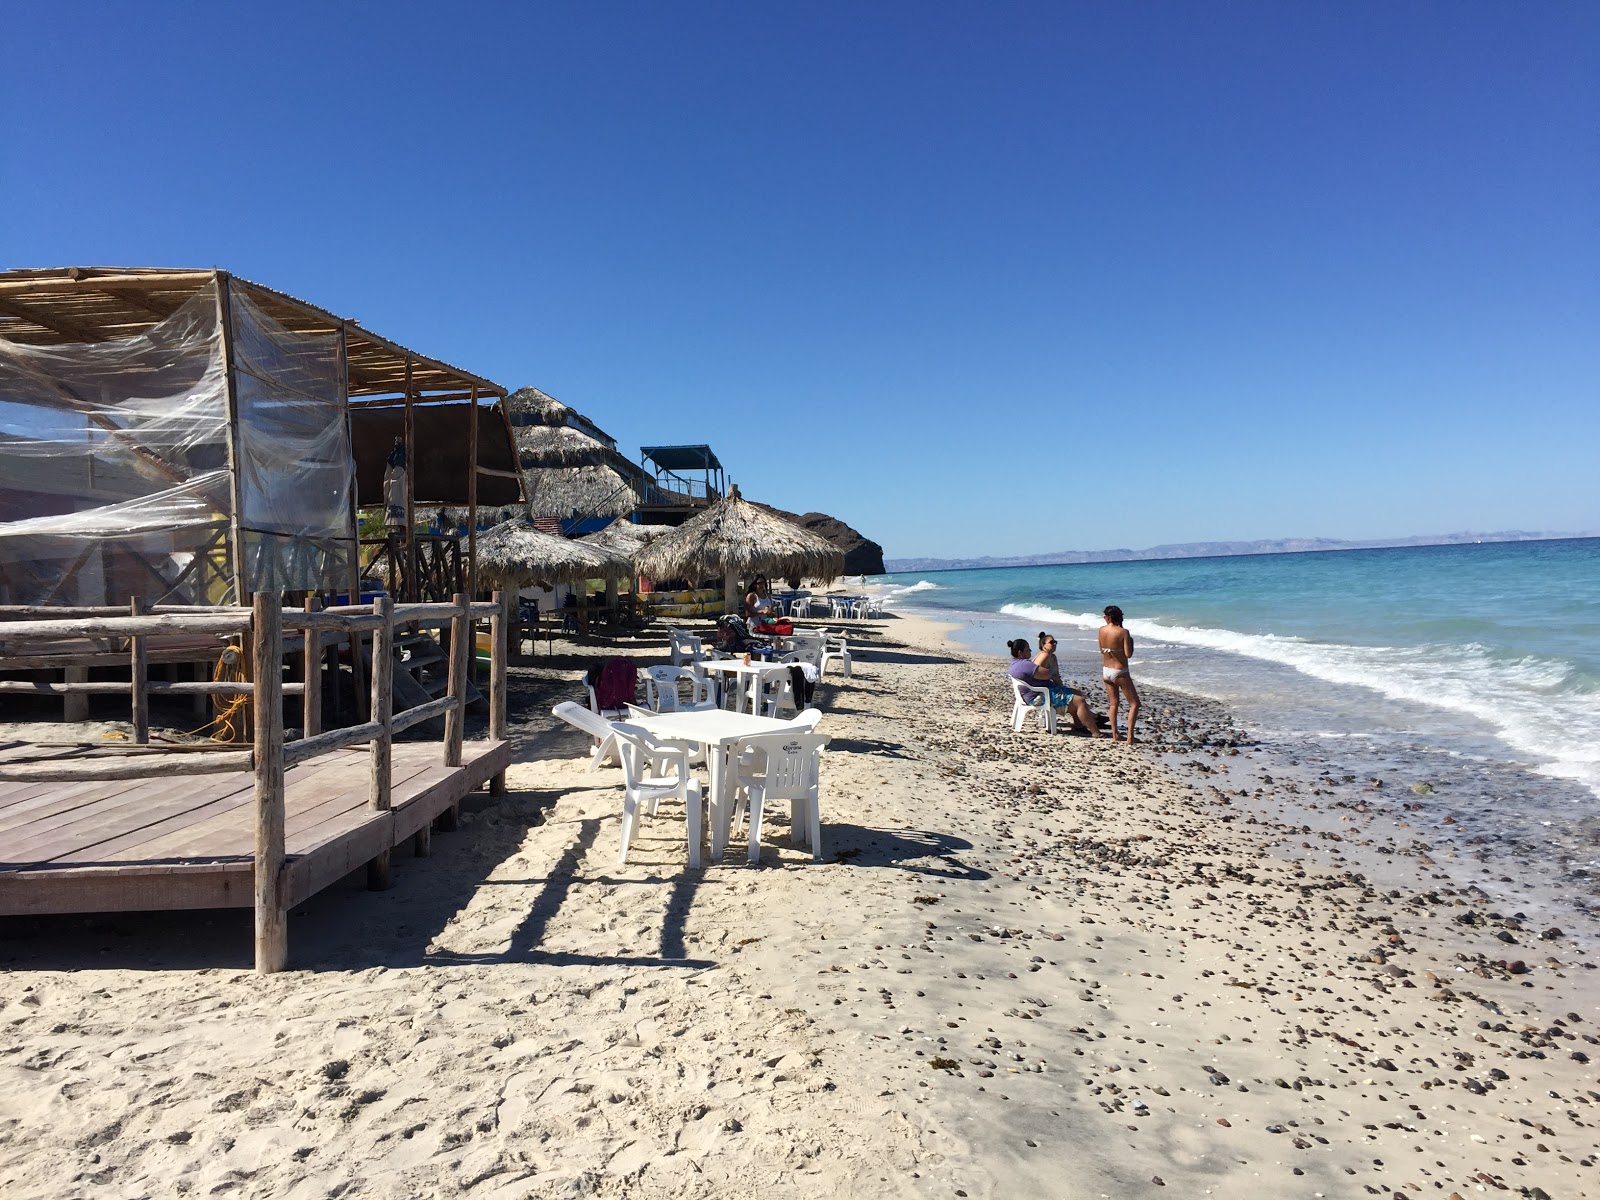 Fotografie cu Arbolito Beach II - locul popular printre cunoscătorii de relaxare